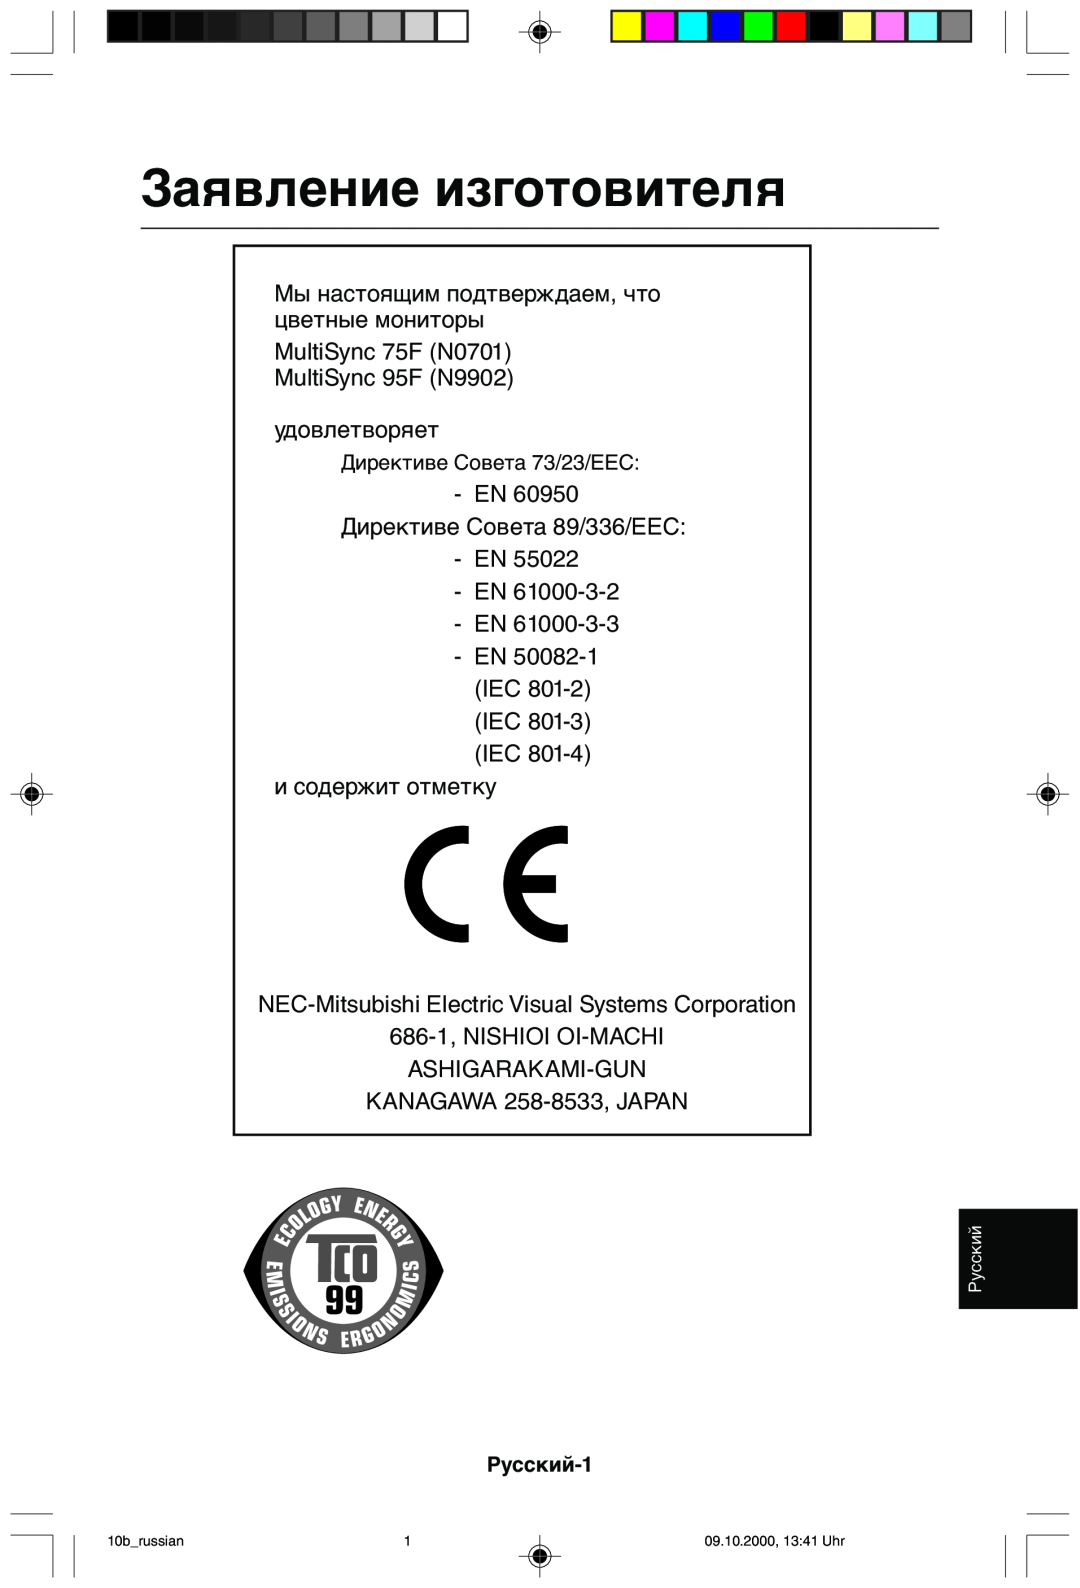 NEC 95F user manual Заявление изготовителя, Русский-1 